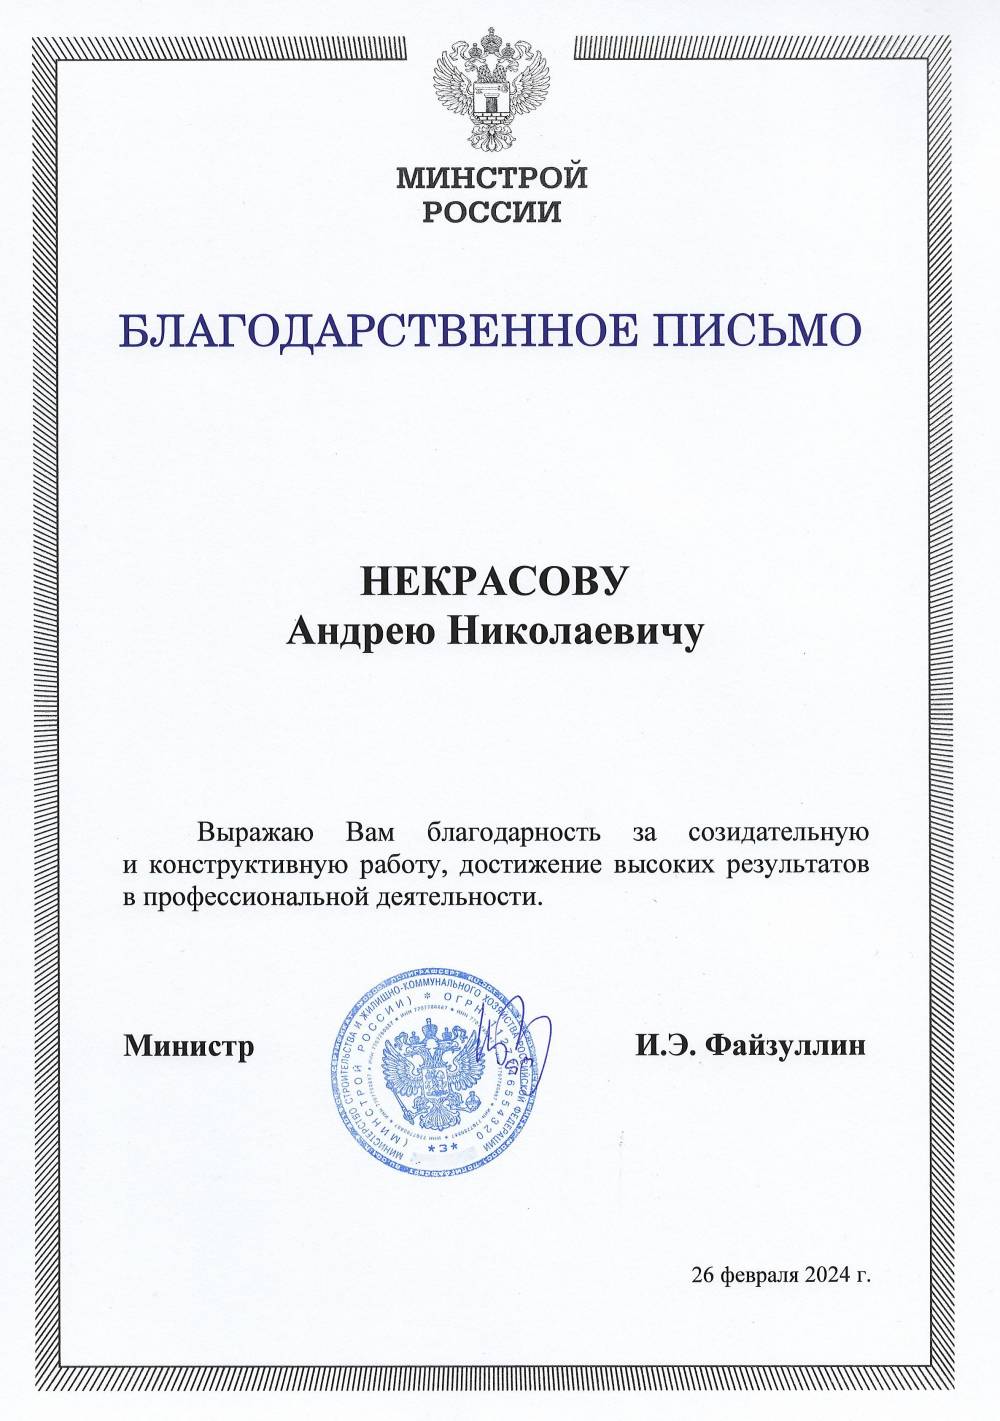 ​Монтажнику СПК вручено благодарственное письмо от Министерства строительства РФ